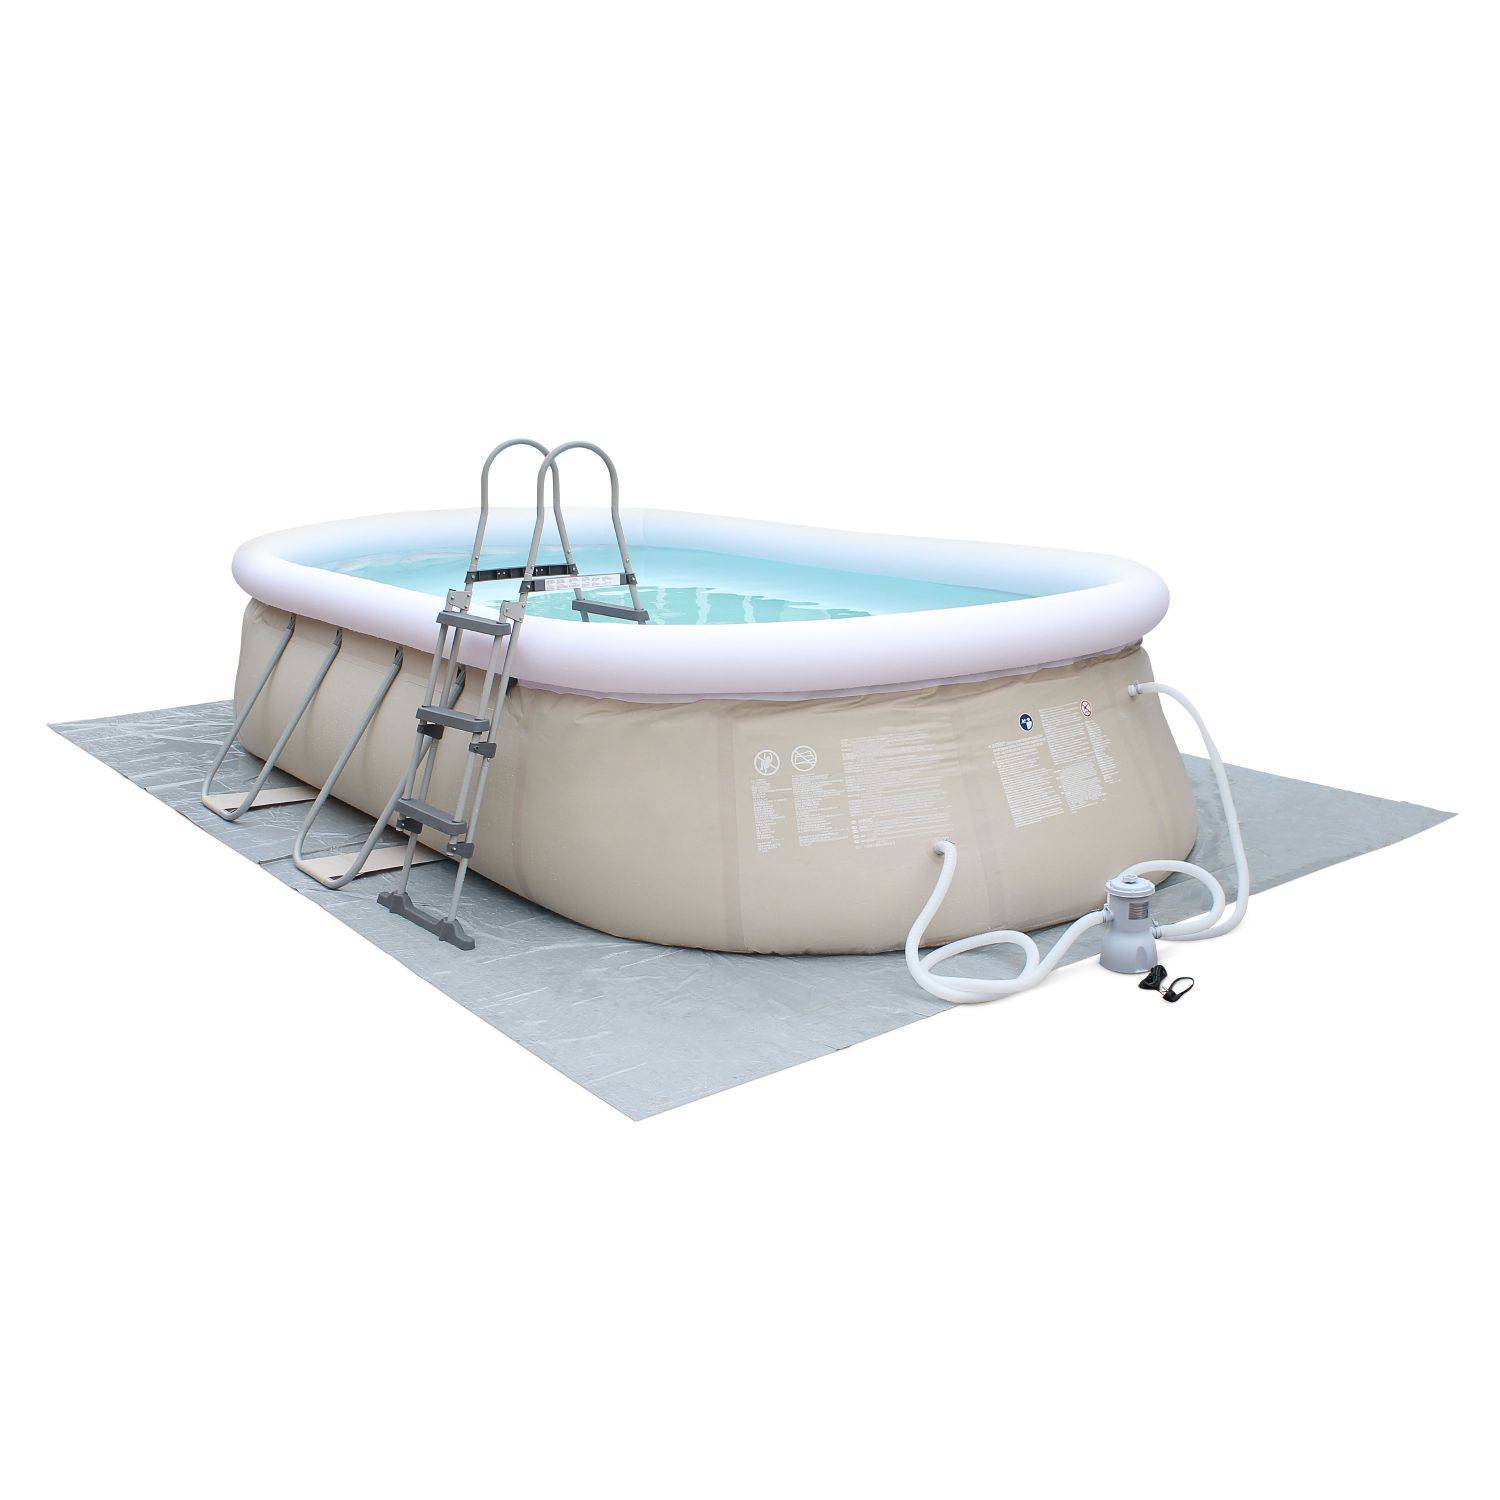 Kit piscine géante complet - Onyx grise - bouée pastèque - piscine autoportante ovale 5,4x3m avec pompe, bâche , tapis de sol et échelle, piscine hors sol autostable Photo3